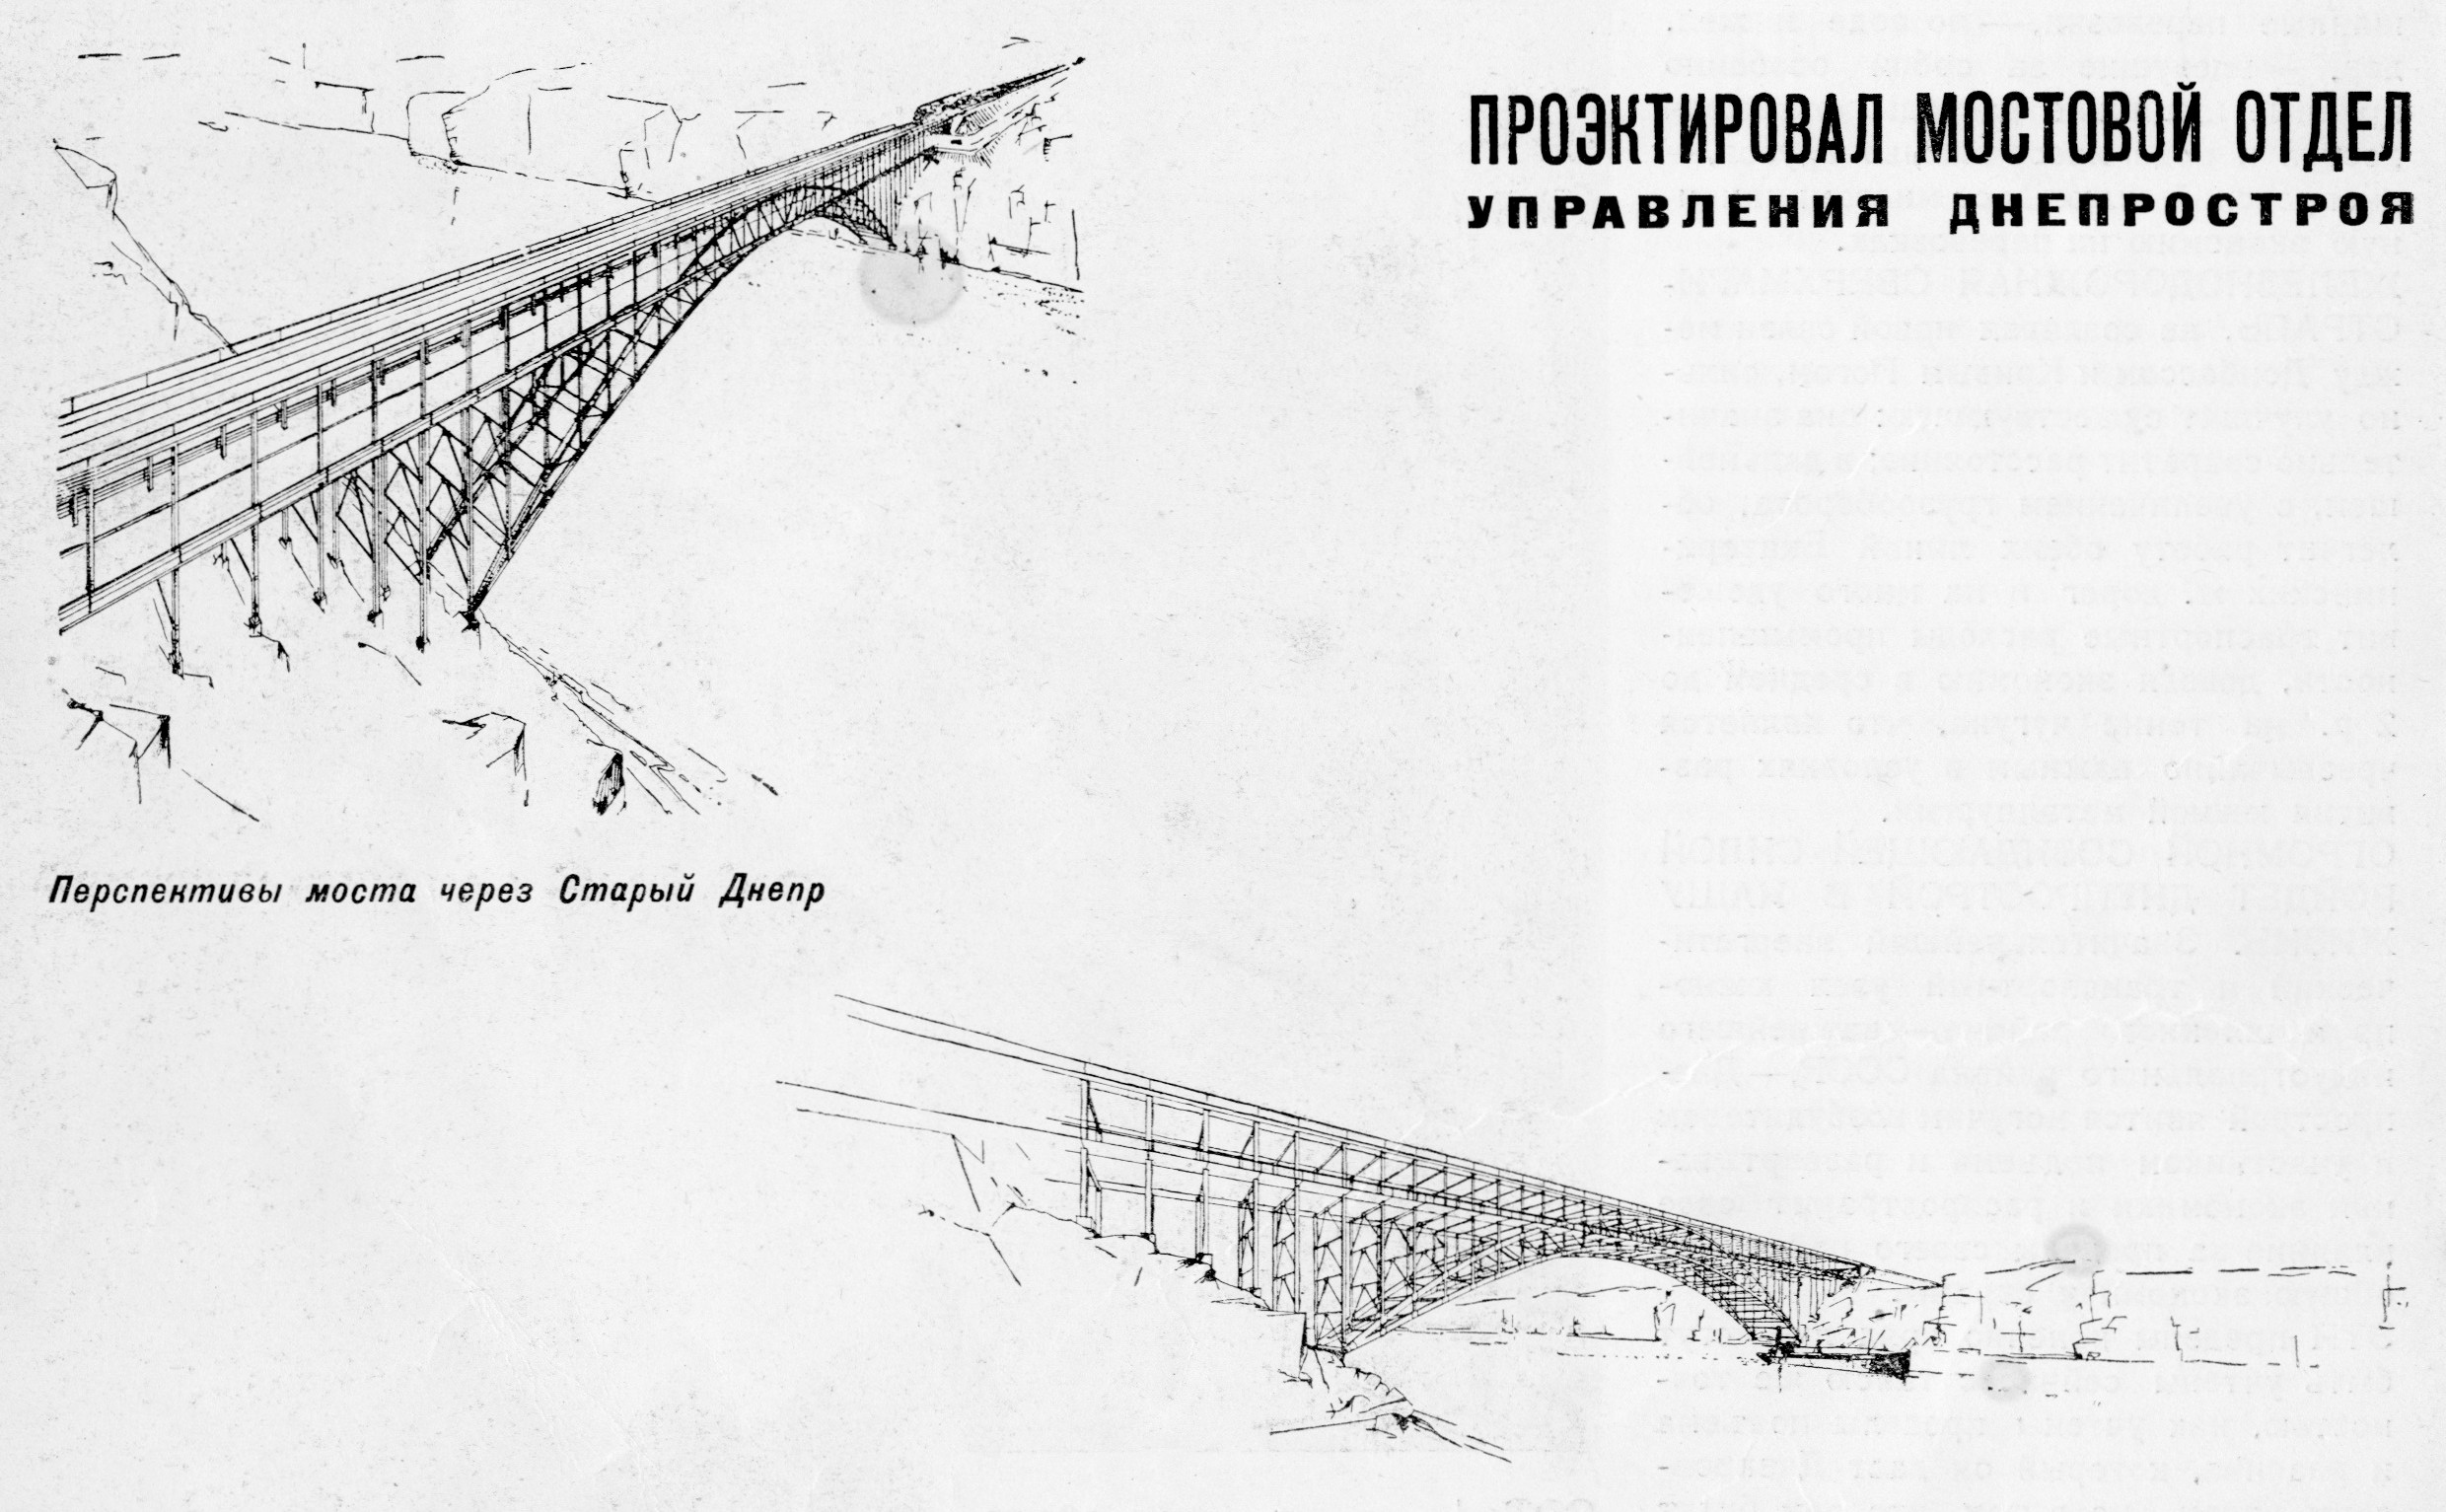 Перспективы моста через Старый Днепр